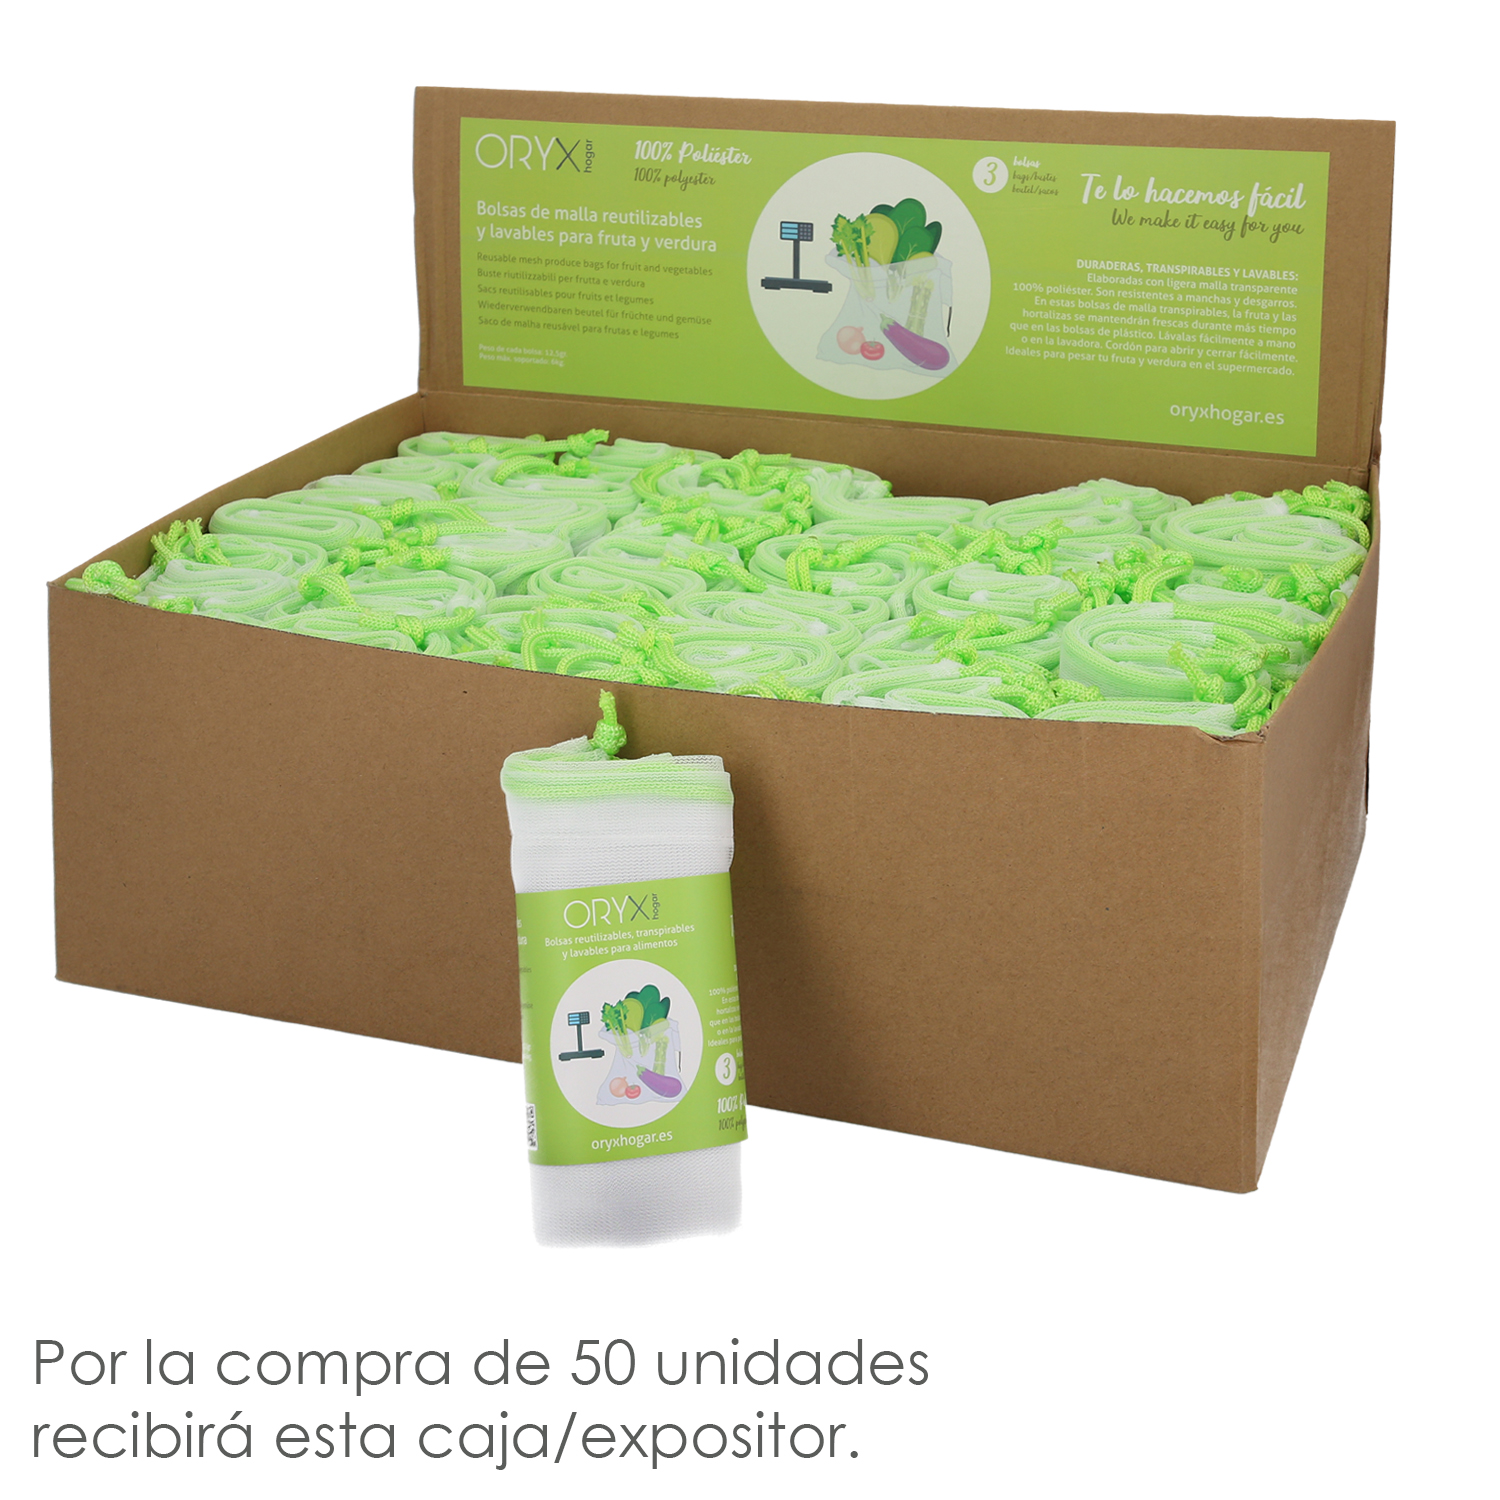 De Compra Reutilizables De Malla 3 Unidades de 30x35 cm. Para Frutas, Verduras,Vergetales, etc. - BigMat